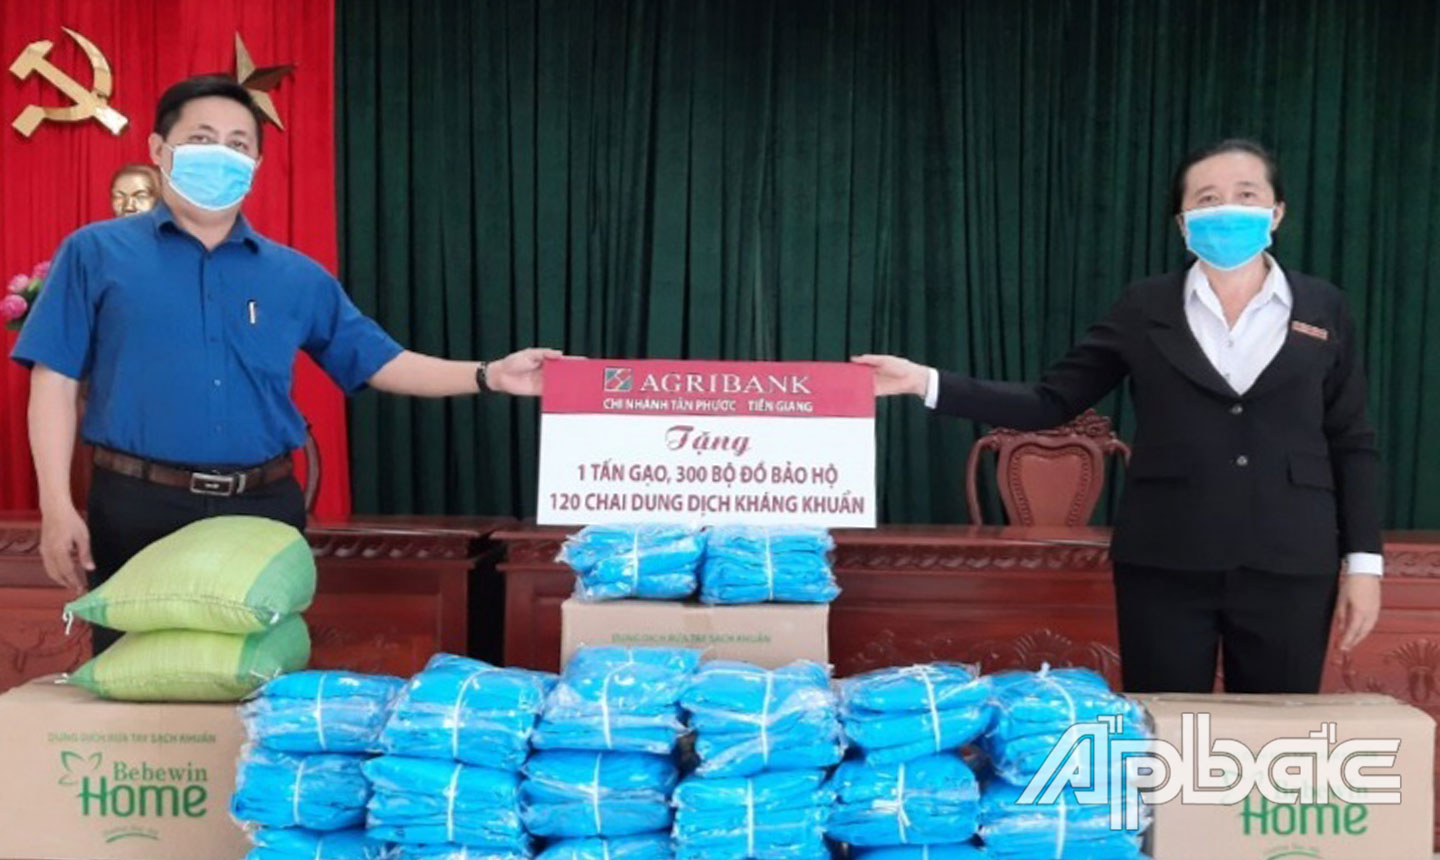 Lãnh đạo Agribank huyện Tân Phước trao  đồ bảo hộ, dung dịch sát khuẩn và Bảng tượng trưng ủng hộ gạo cho các hoàn cảnh khó khăn bị  ảnh hưởng bởi dịch bệnh của huyện Tân Phước. 